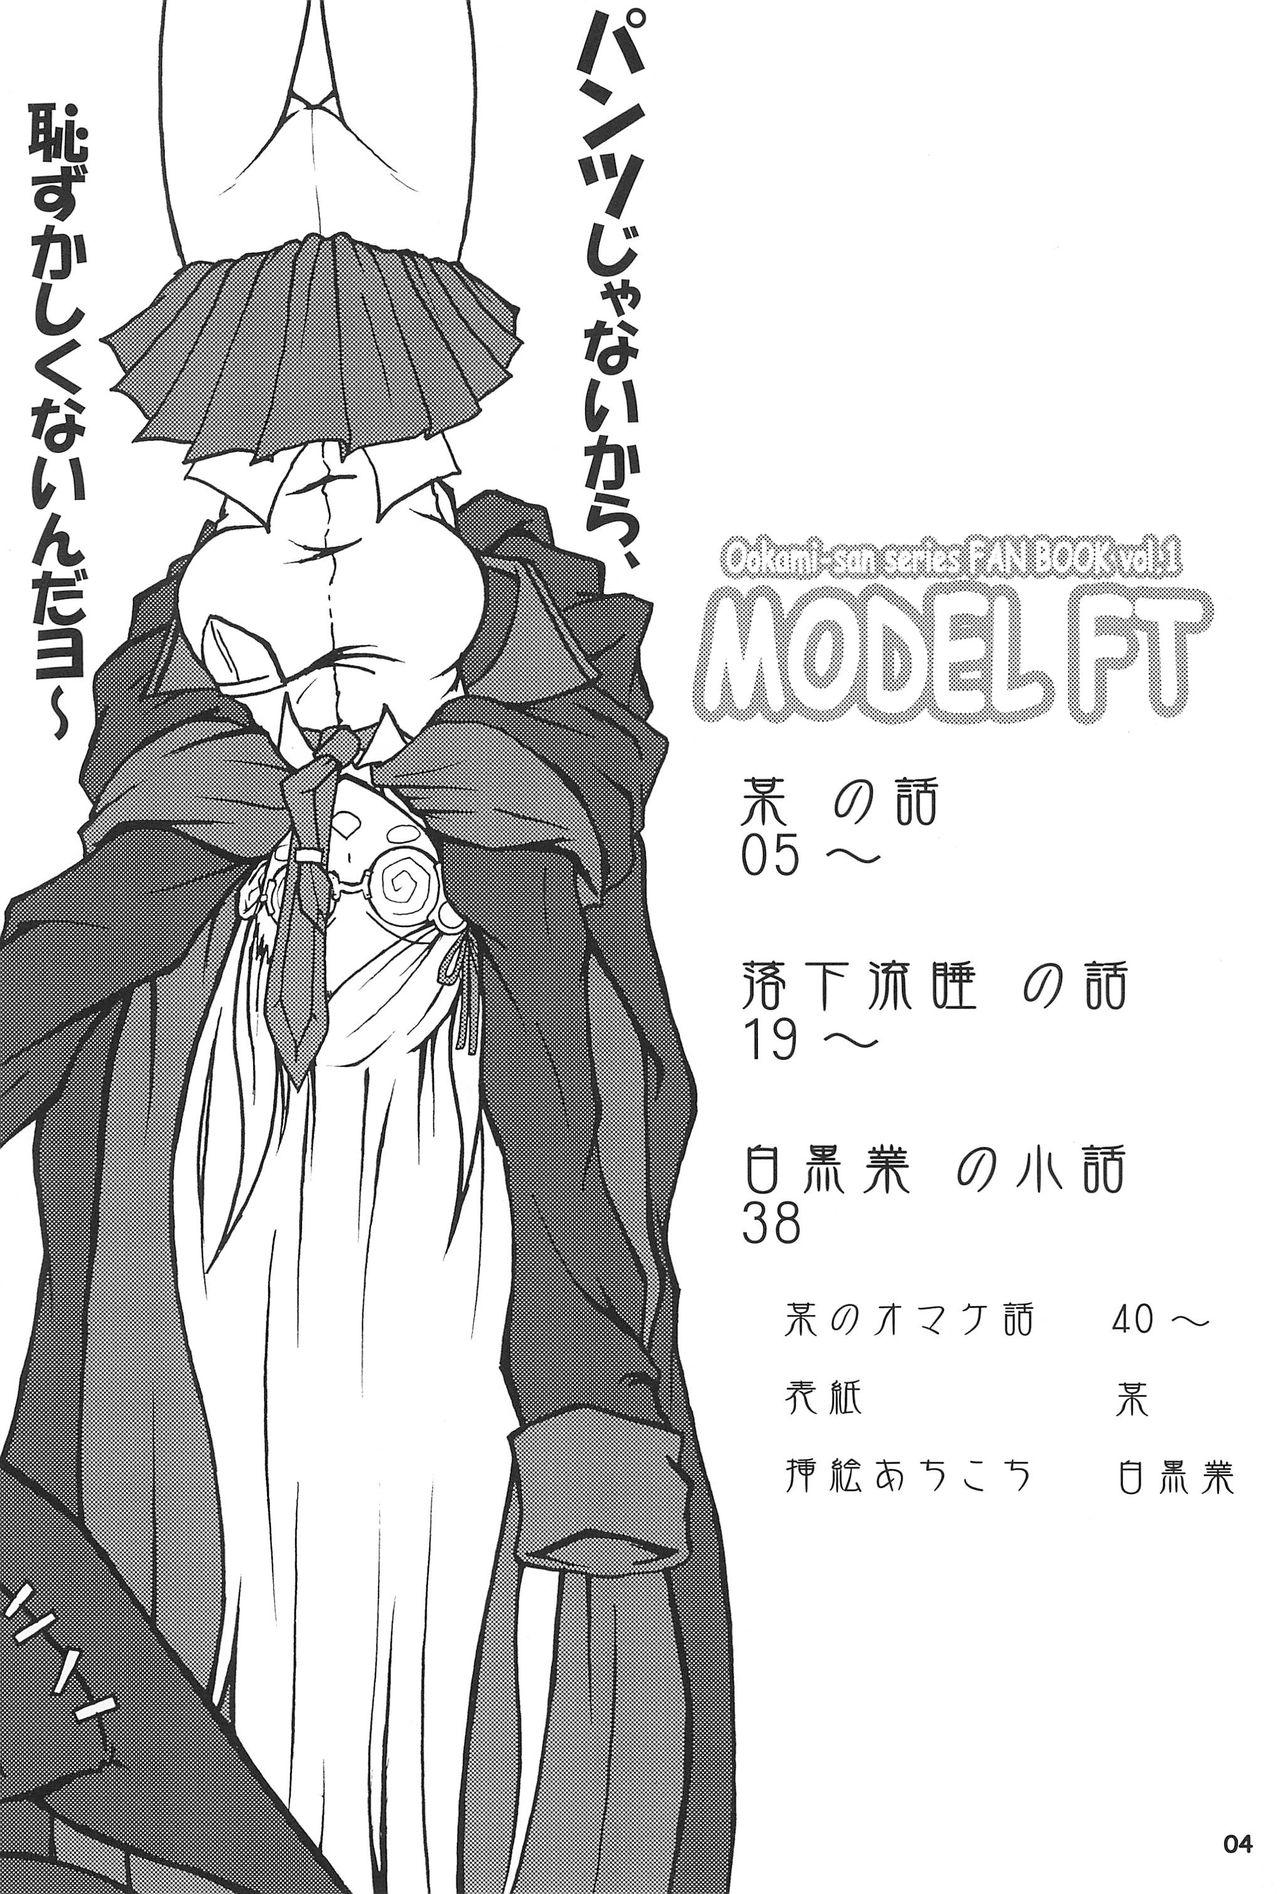 Ohmibod MODEL FT - Ookami-san to shichinin no nakama-tachi Muscular - Page 4